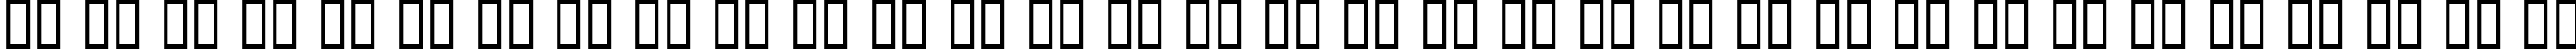 Пример написания русского алфавита шрифтом Netherworld